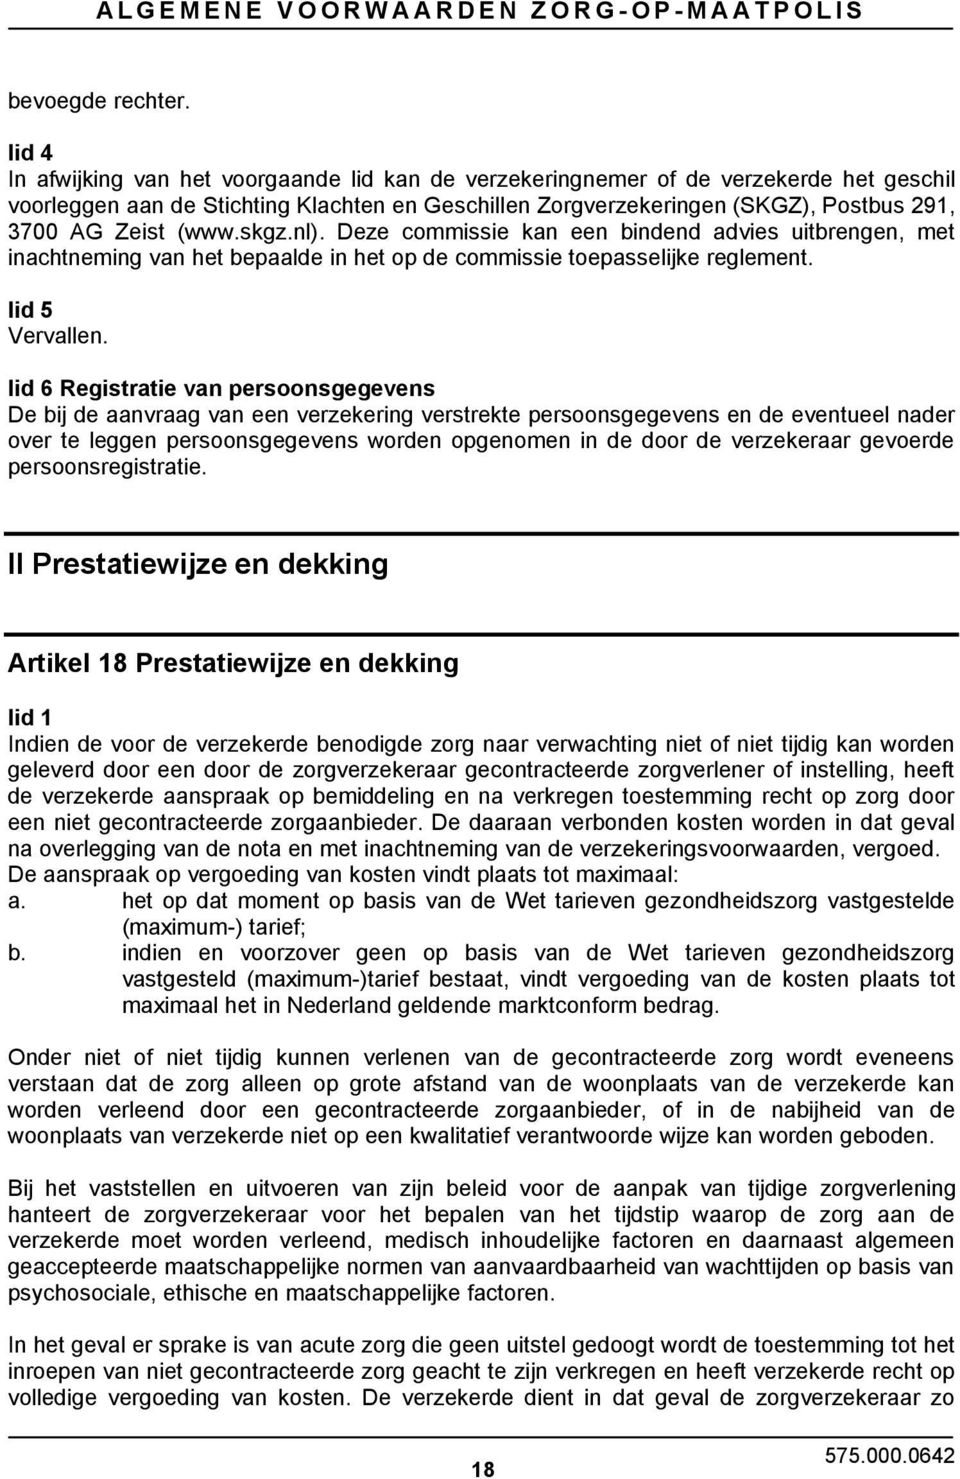 (www.skgz.nl). Deze commissie kan een bindend advies uitbrengen, met inachtneming van het bepaalde in het op de commissie toepasselijke reglement. lid 5 Vervallen.